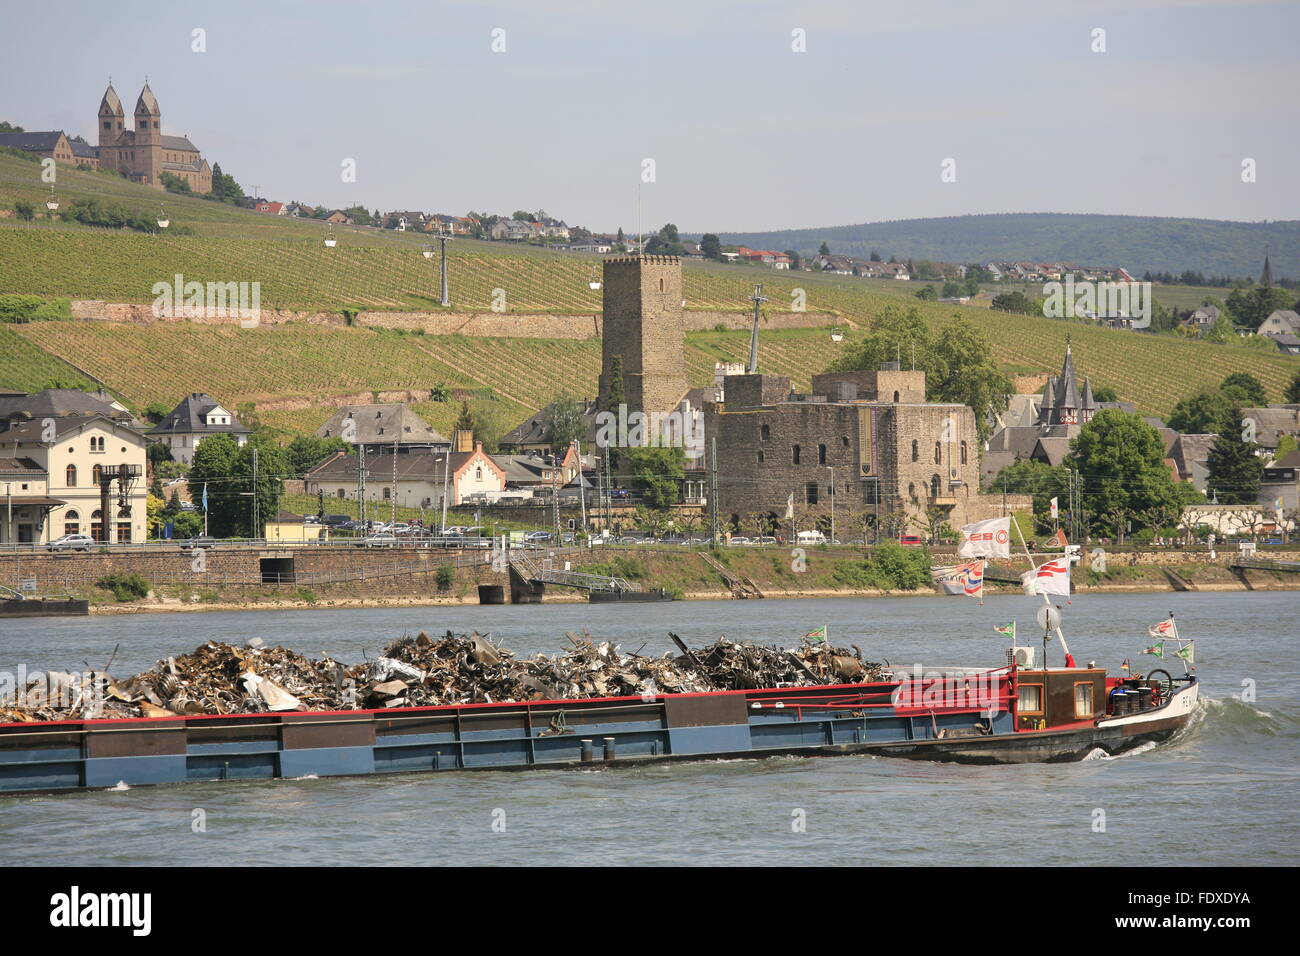 Deutschland, Renania-Palatinato, Bingen am Rhein, Blick auf das hessische gegenueberliegende Ufer mit Ruedesheim am Rhein Foto Stock